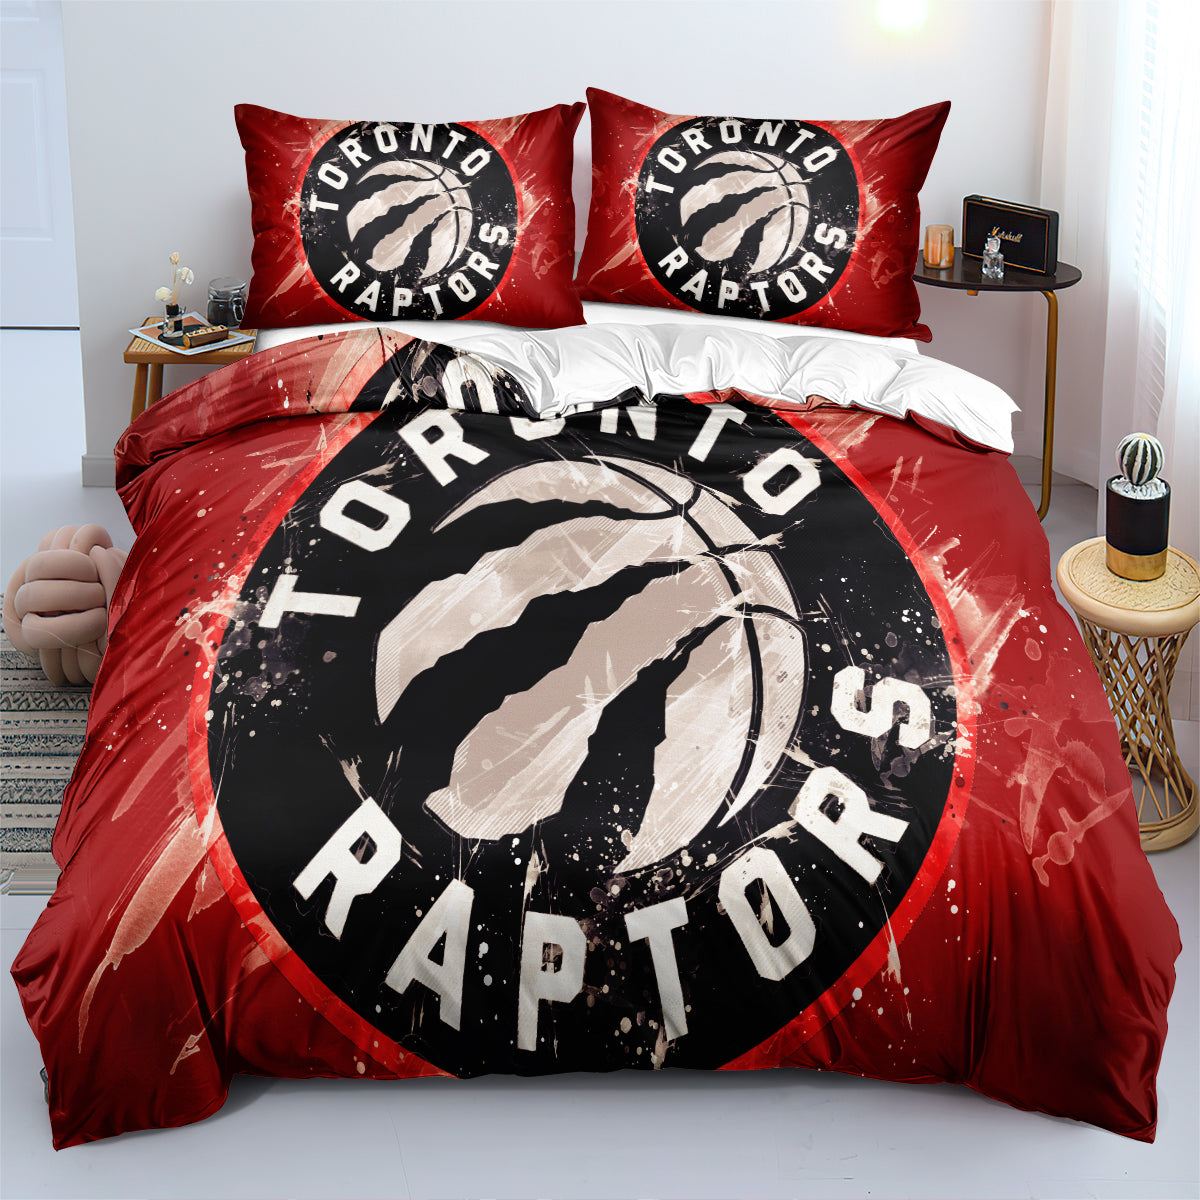 Toronto Basketball Raptors Bedding Set Quilt Cover Without Filler